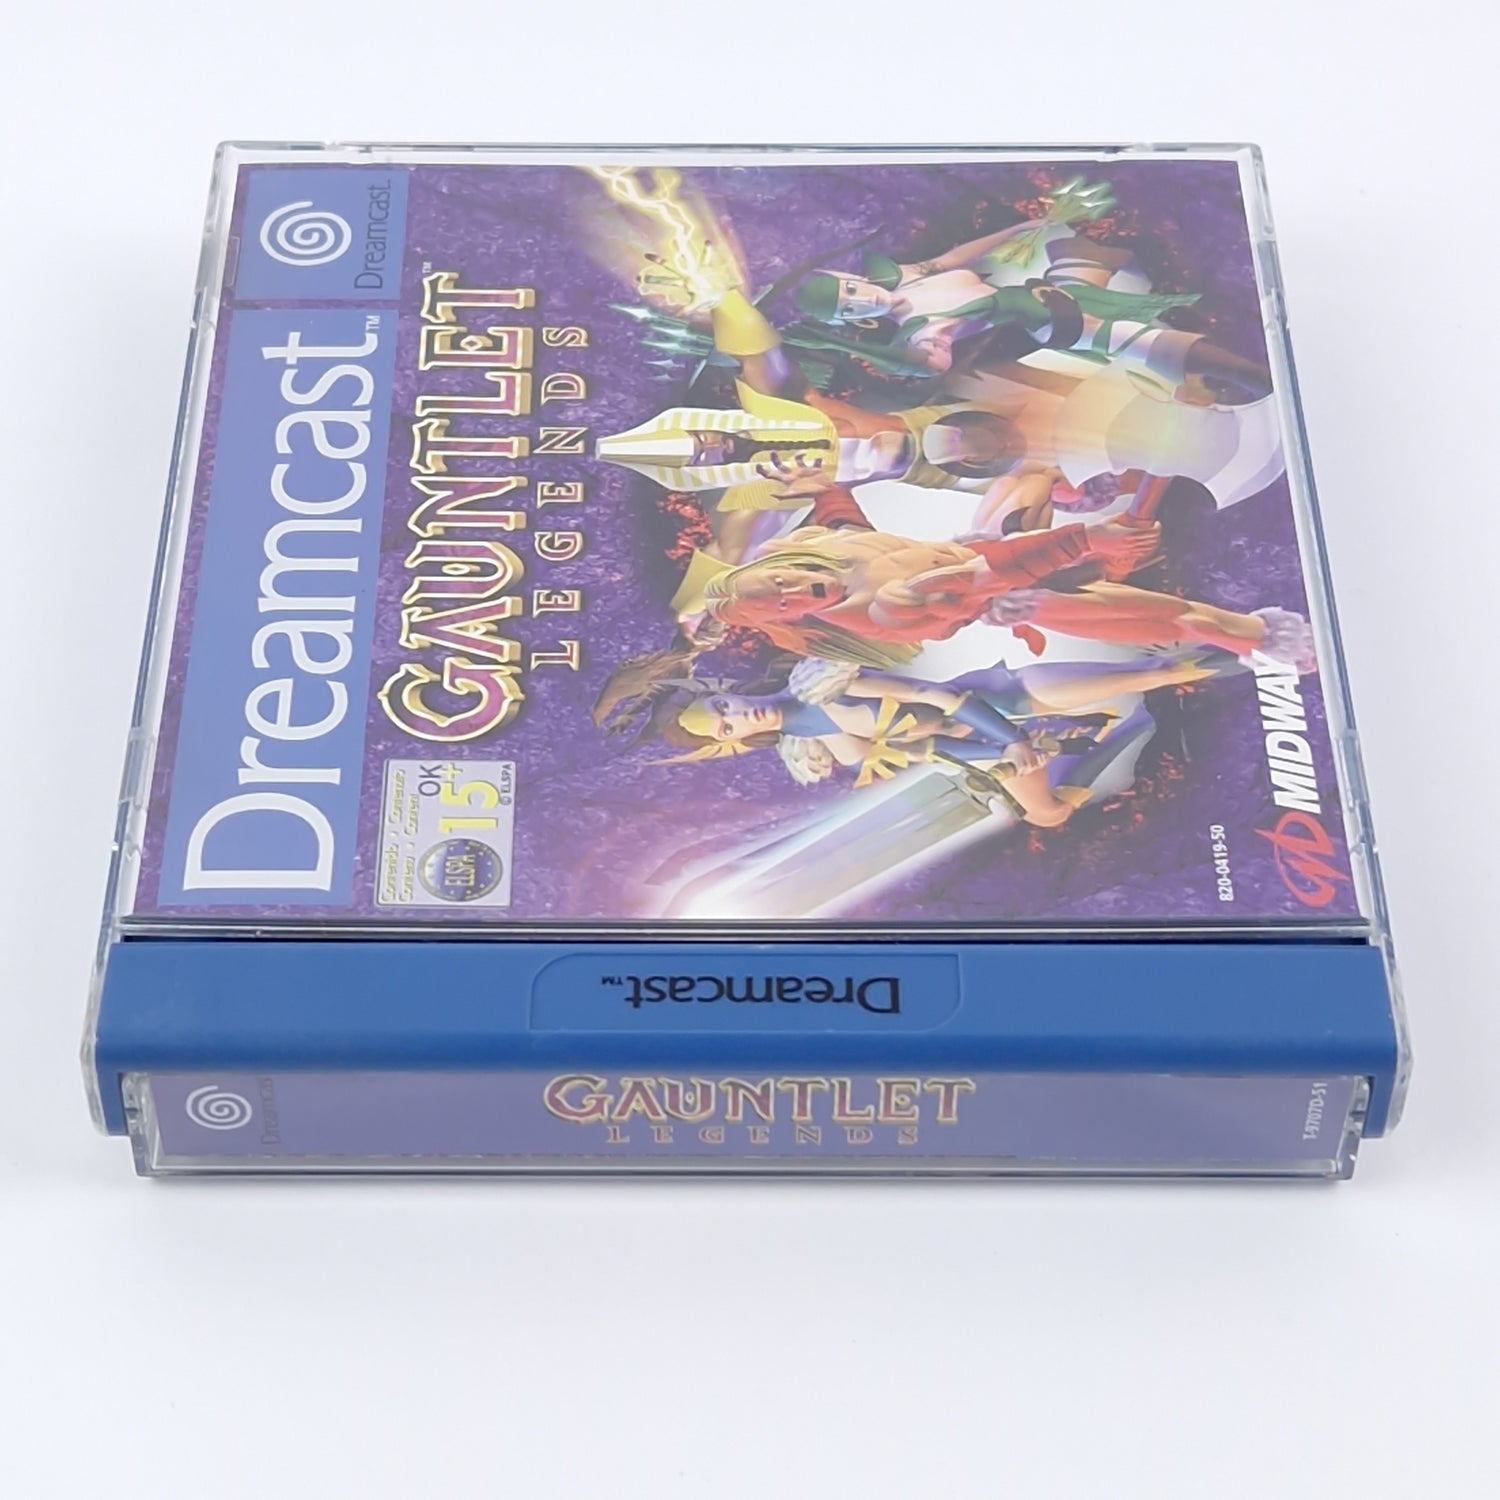 Sega Dreamcast Game: Gauntlet Legends - OVP Instructions CD | DC PAL Game Midway